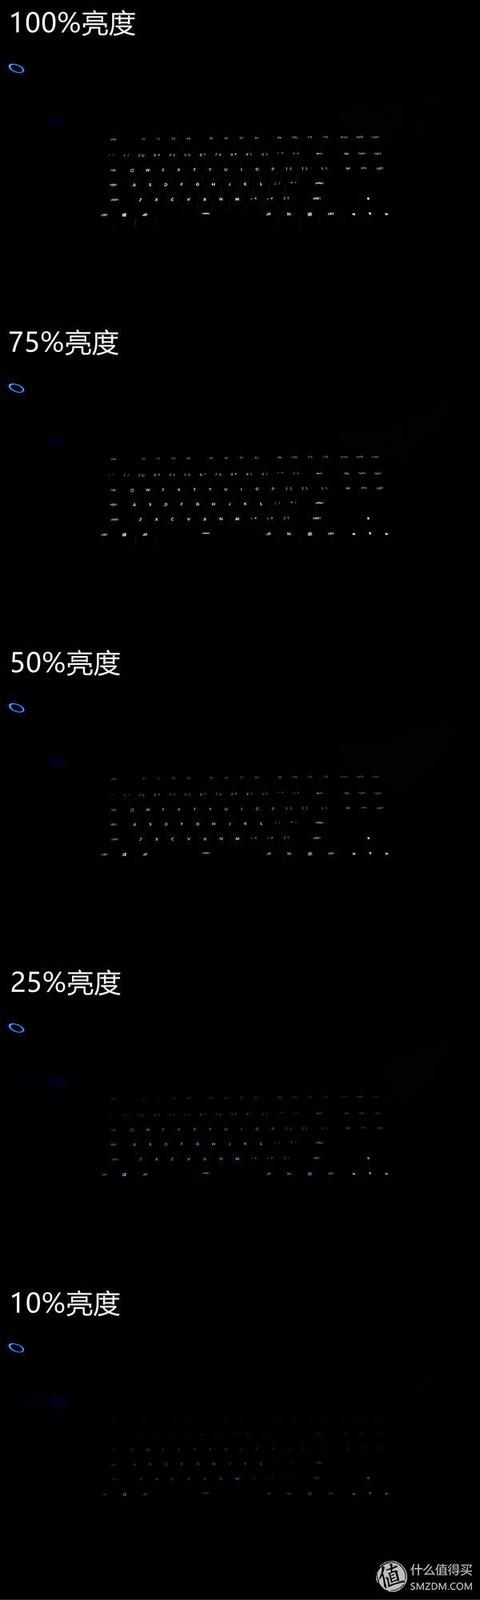 MI 小米 悦米 机械键盘pro 开箱